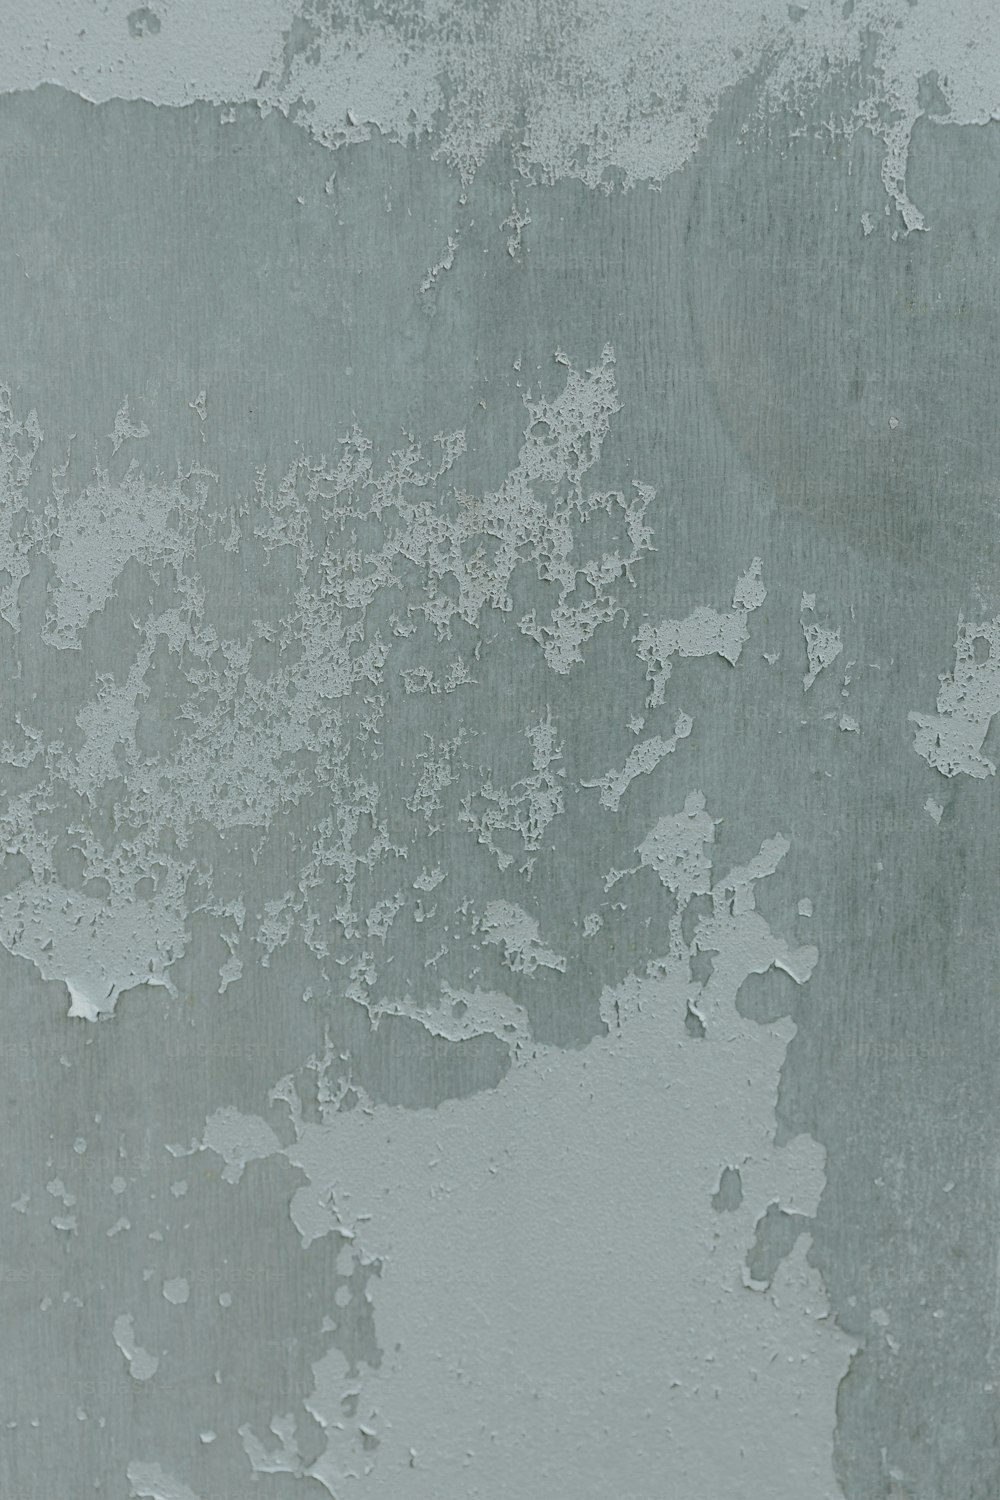 페인트가 벗겨진 벽의 흑백 사진